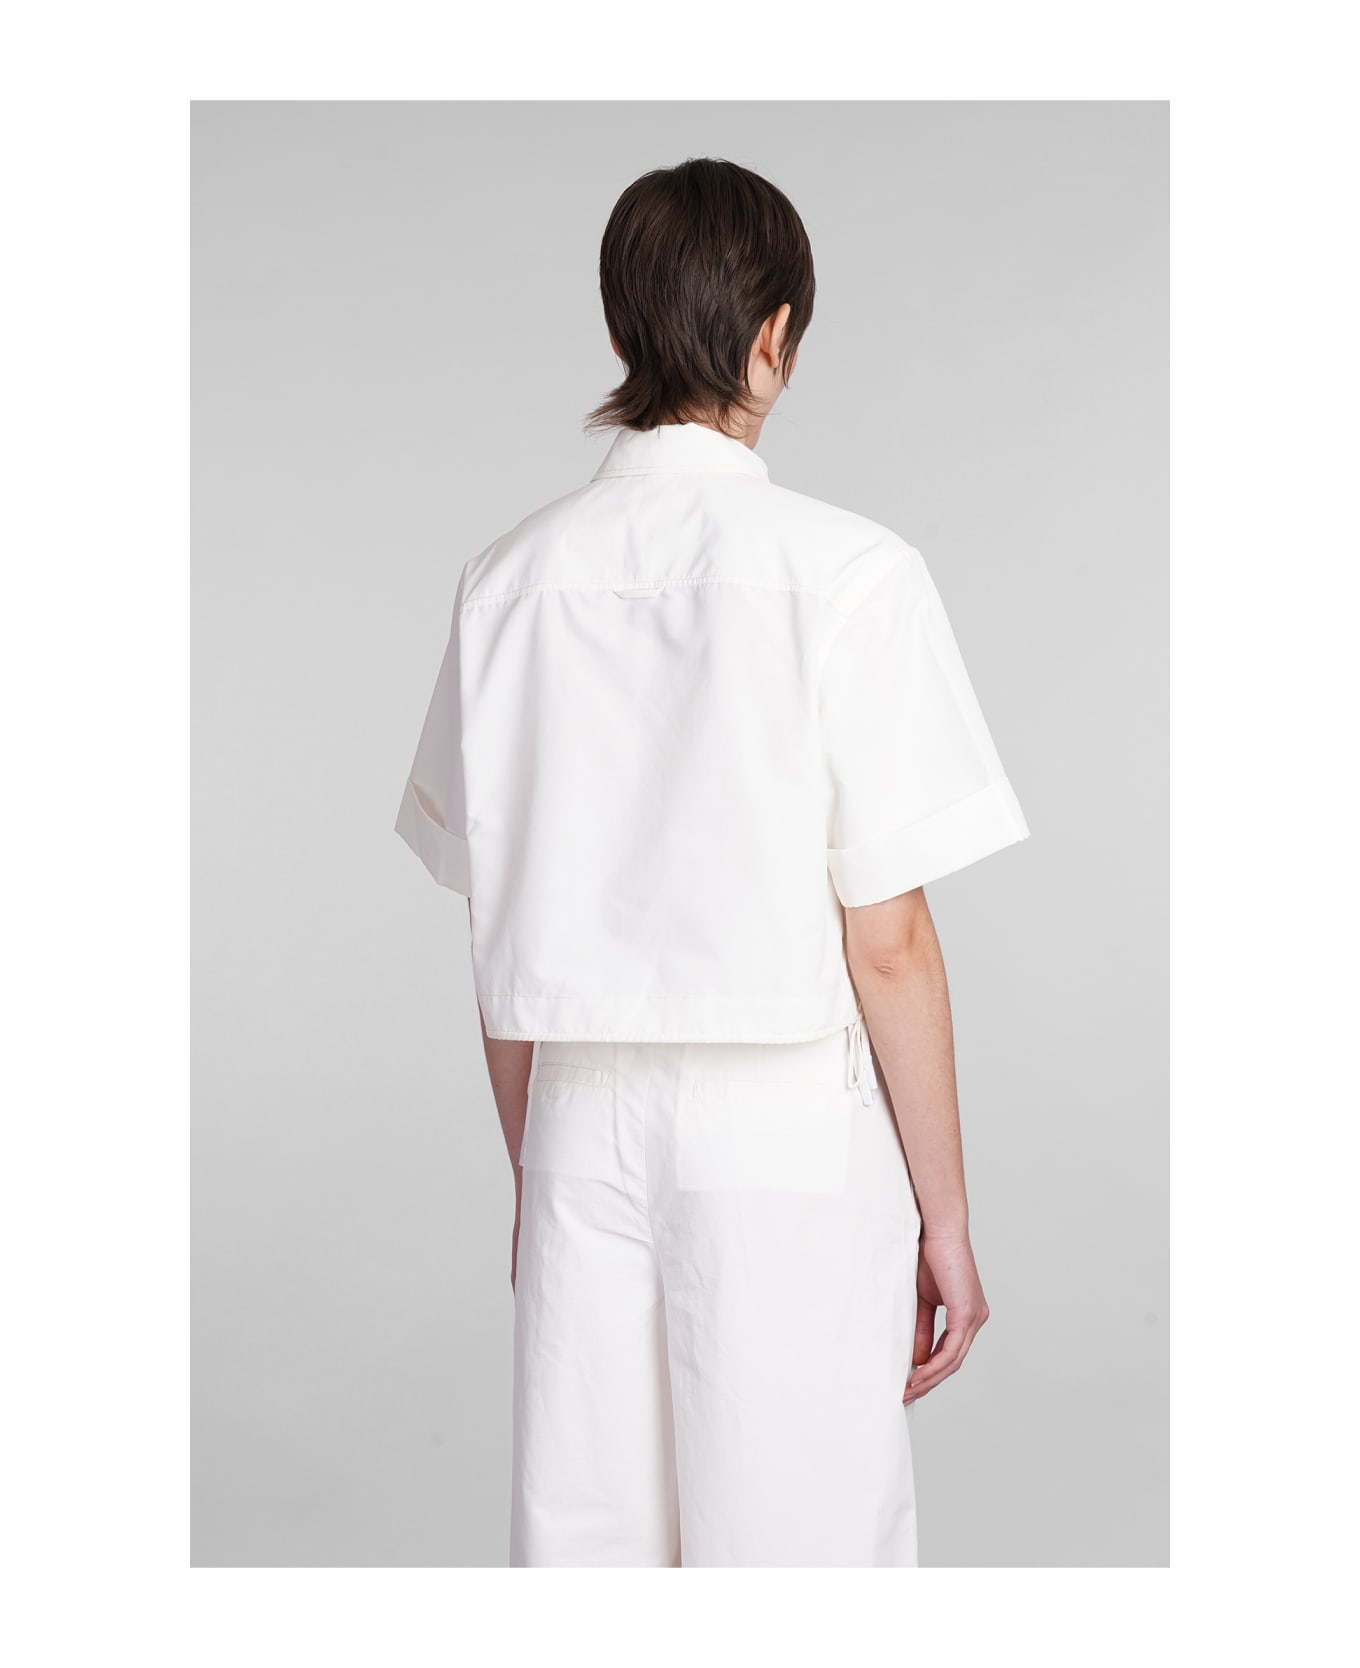 Simkhai Ryett Shirt In White Cotton - white シャツ